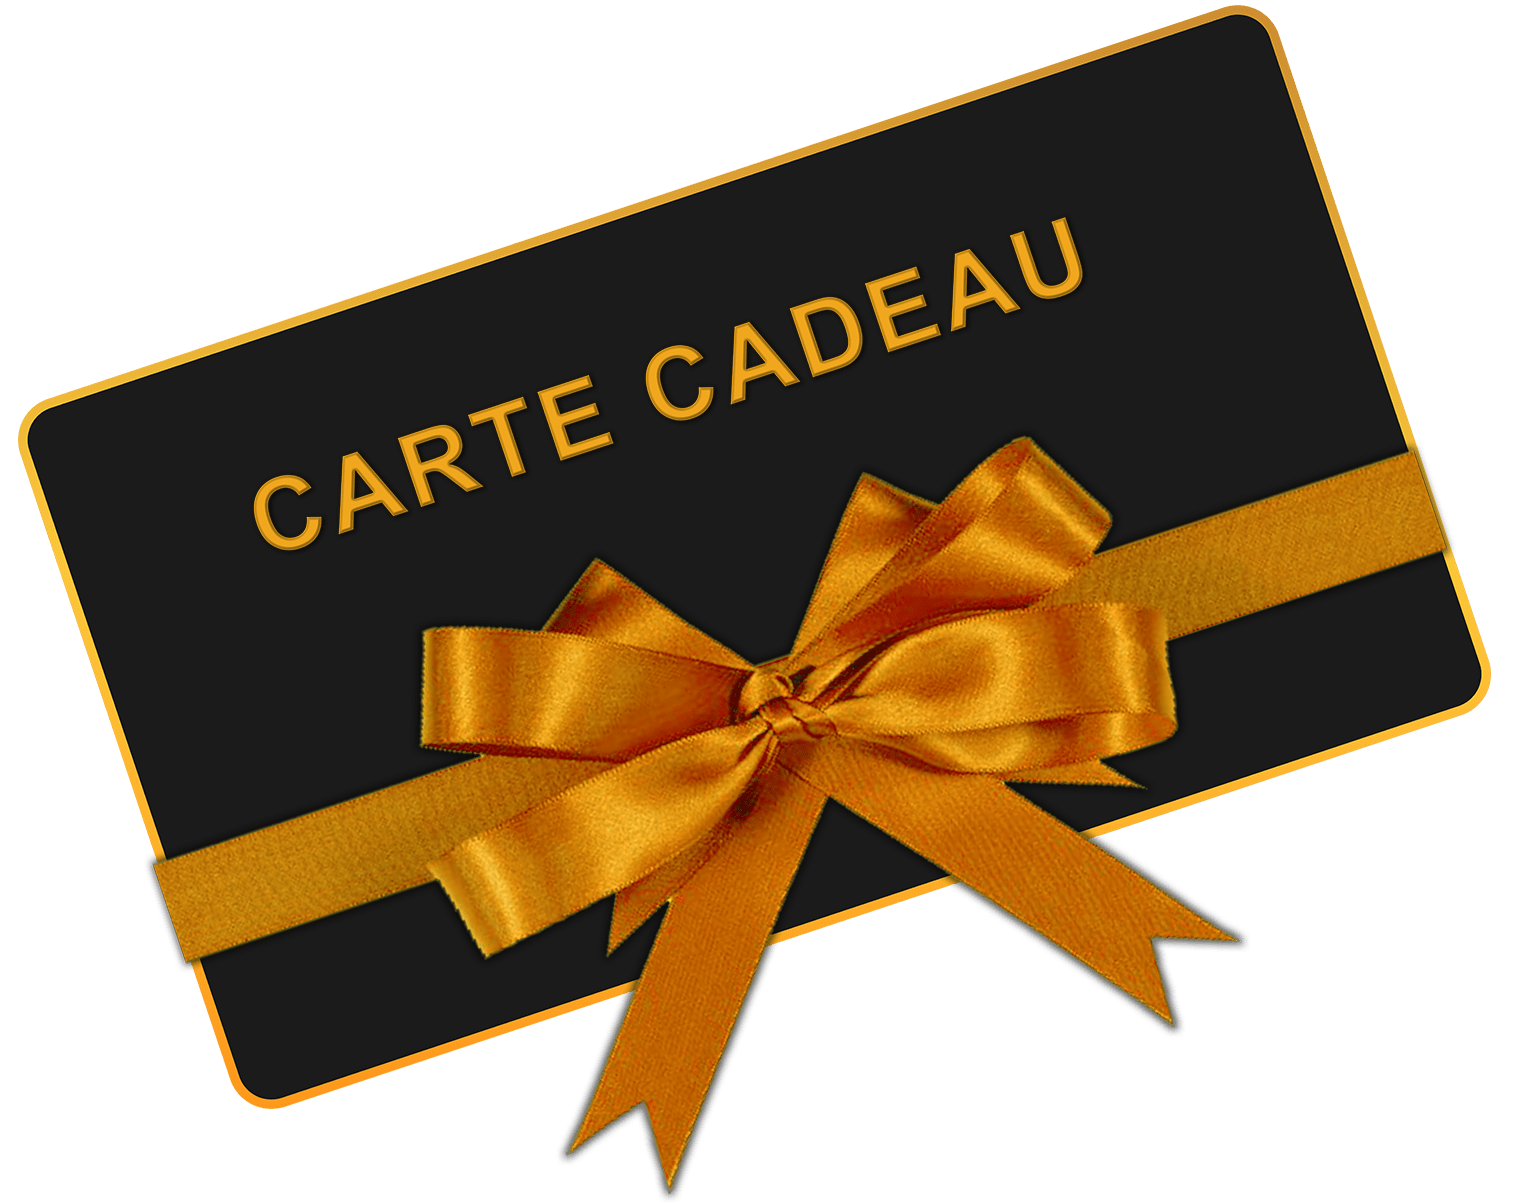 CARTE CADEAUX - Povcars